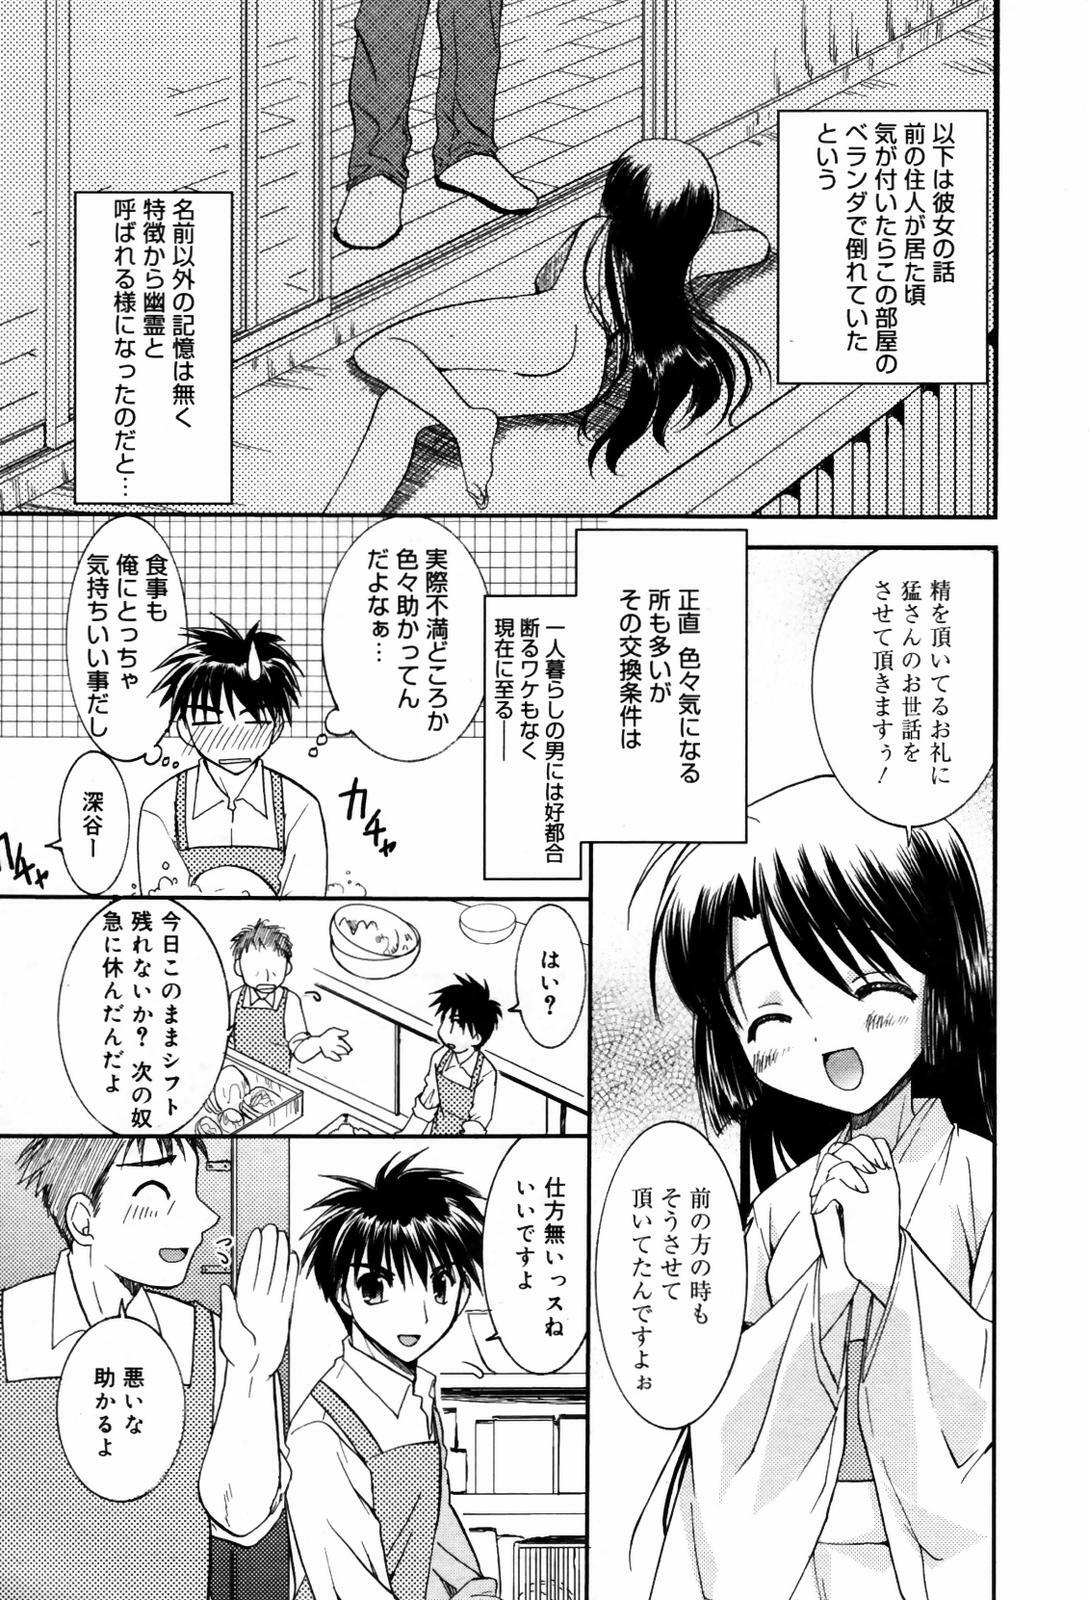 Manga Bangaichi 2007-09 page 27 full